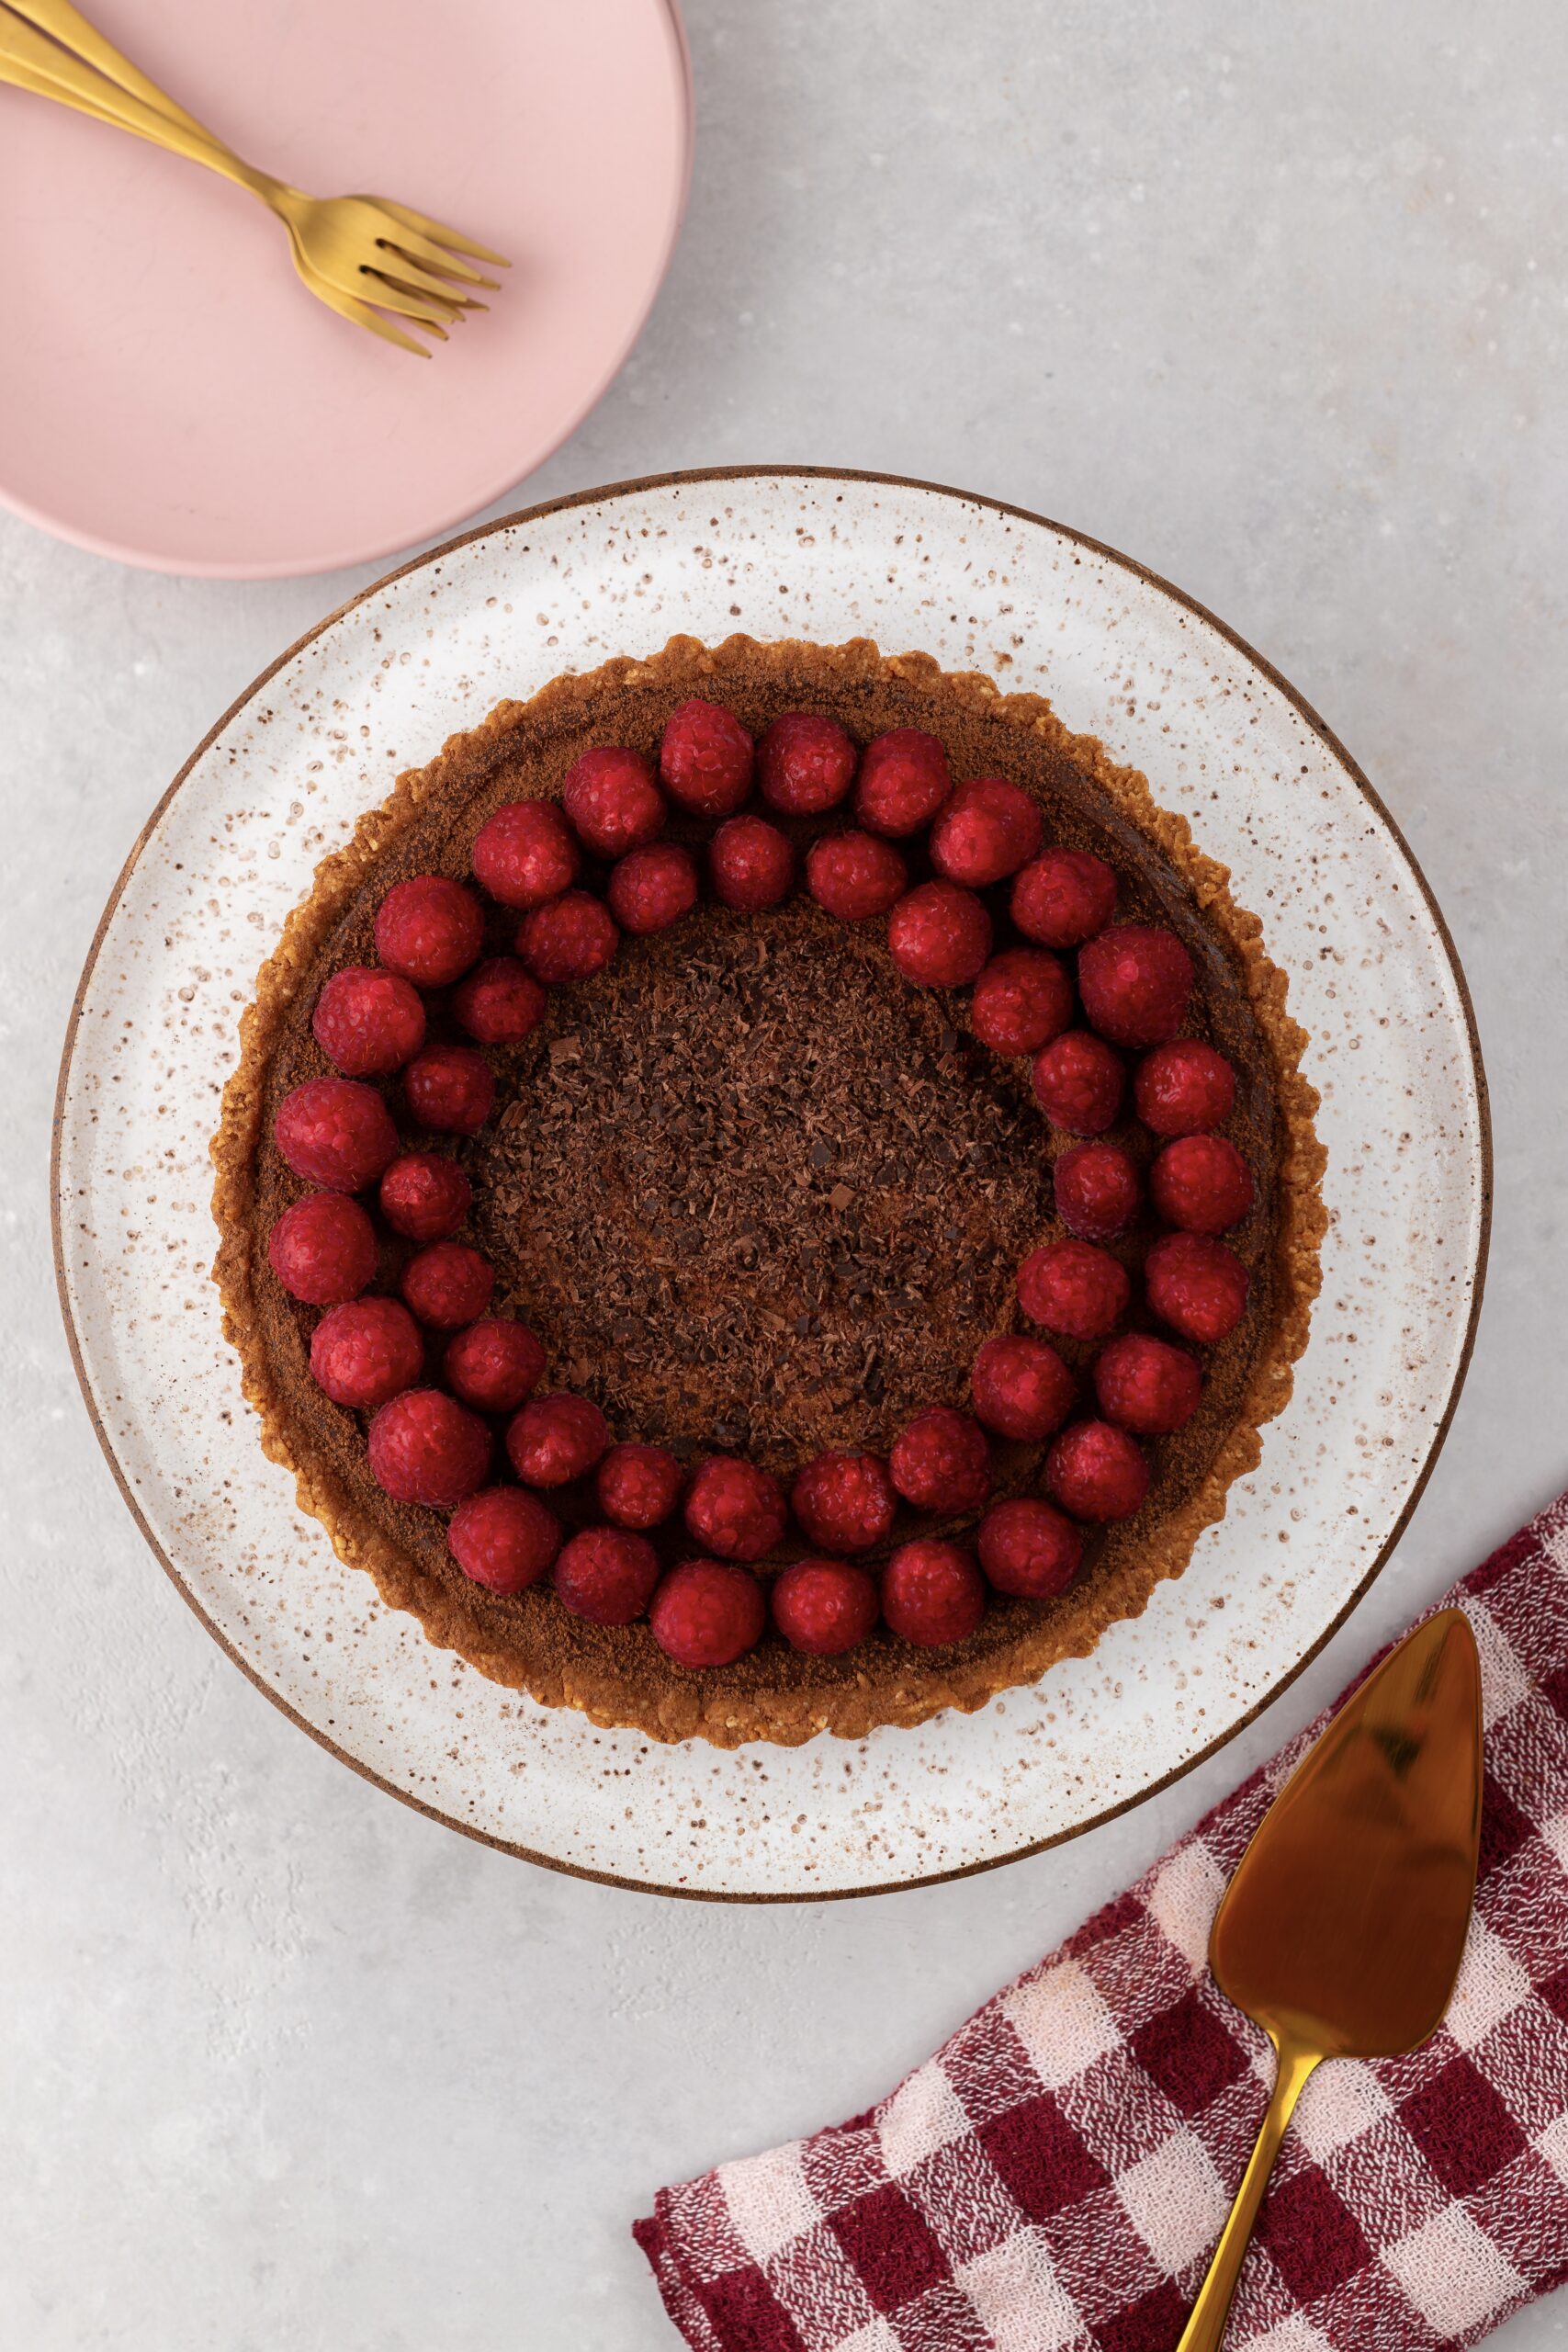 torta franuí vegana decorada com ganache de chocolate, raspas de chocolate e framboesas frescas